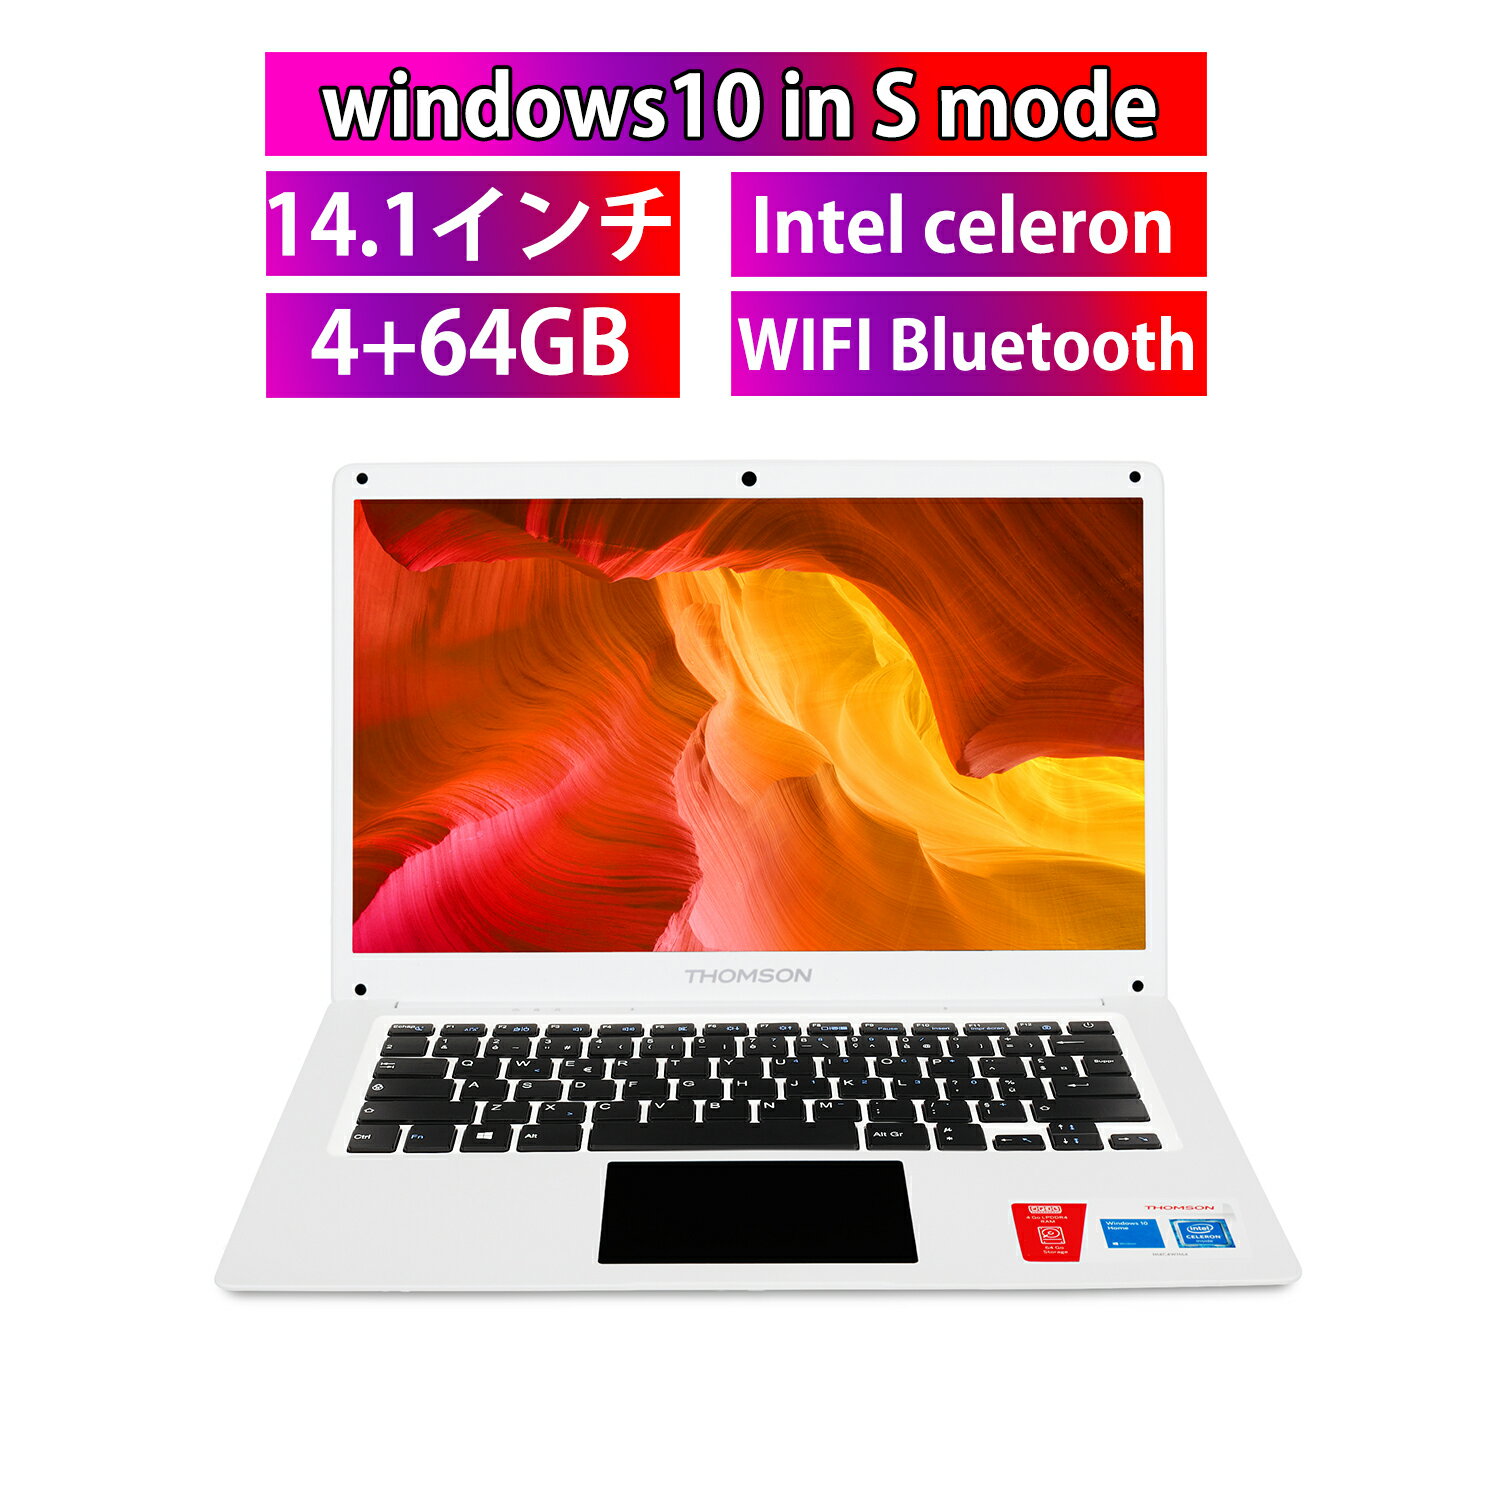 【スーパーSALE限定価格 】新品 ノートパソコン 14インチ Windows 10S 学生 学生用 4GBメモリ 64GBSSD 512GB増設可能 IPS 大画面 2.4GHz対応 14.1インチ WIFI Bluetooth 軽量 重さ1.15kg 薄型 …